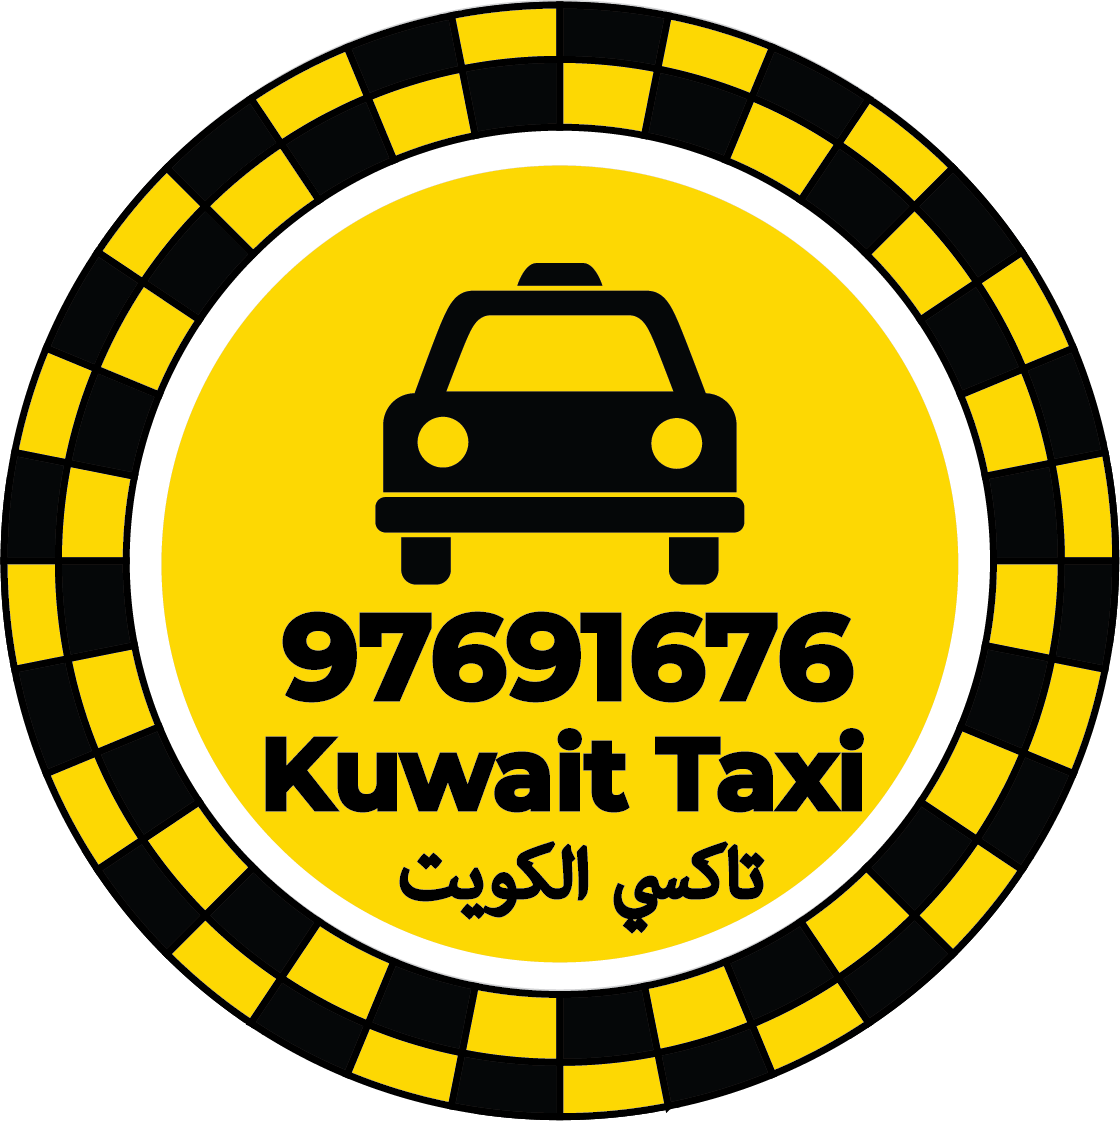 تاكسي الري في الكويت - رقم تاكسي في الري الكويت